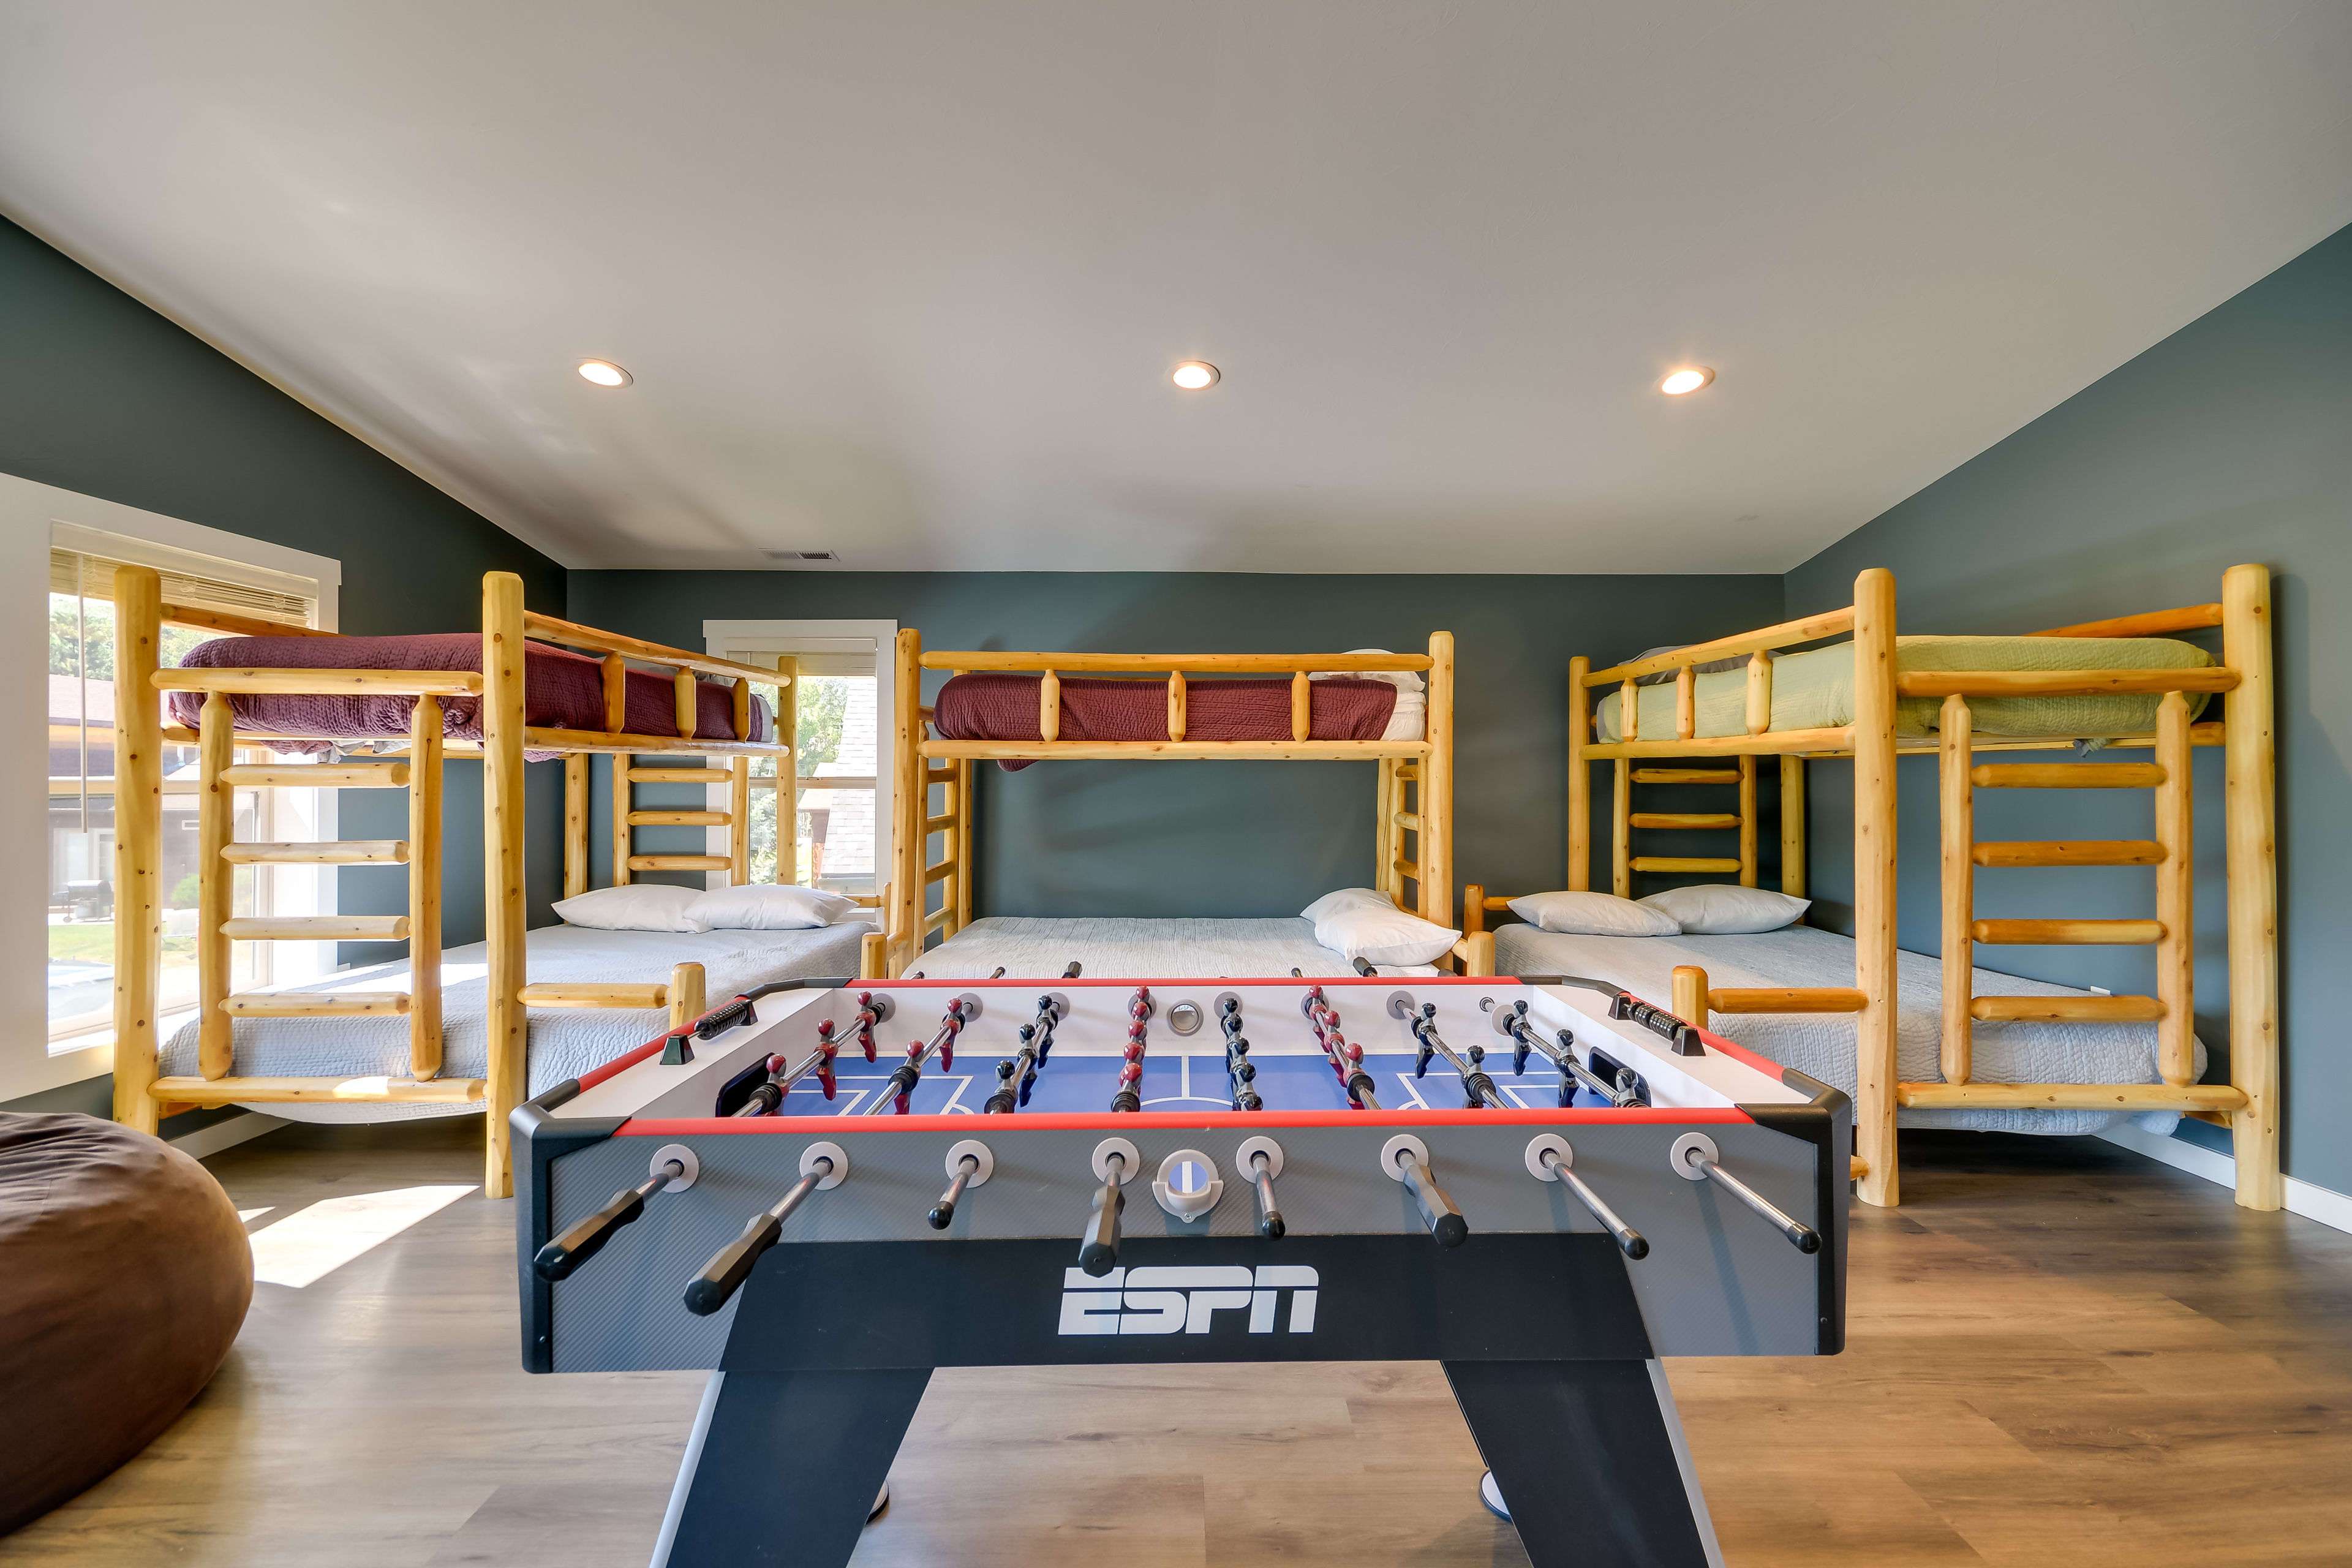 Game Room | 2nd Floor | 3 Twin/Queen Bunk Beds | Foosball